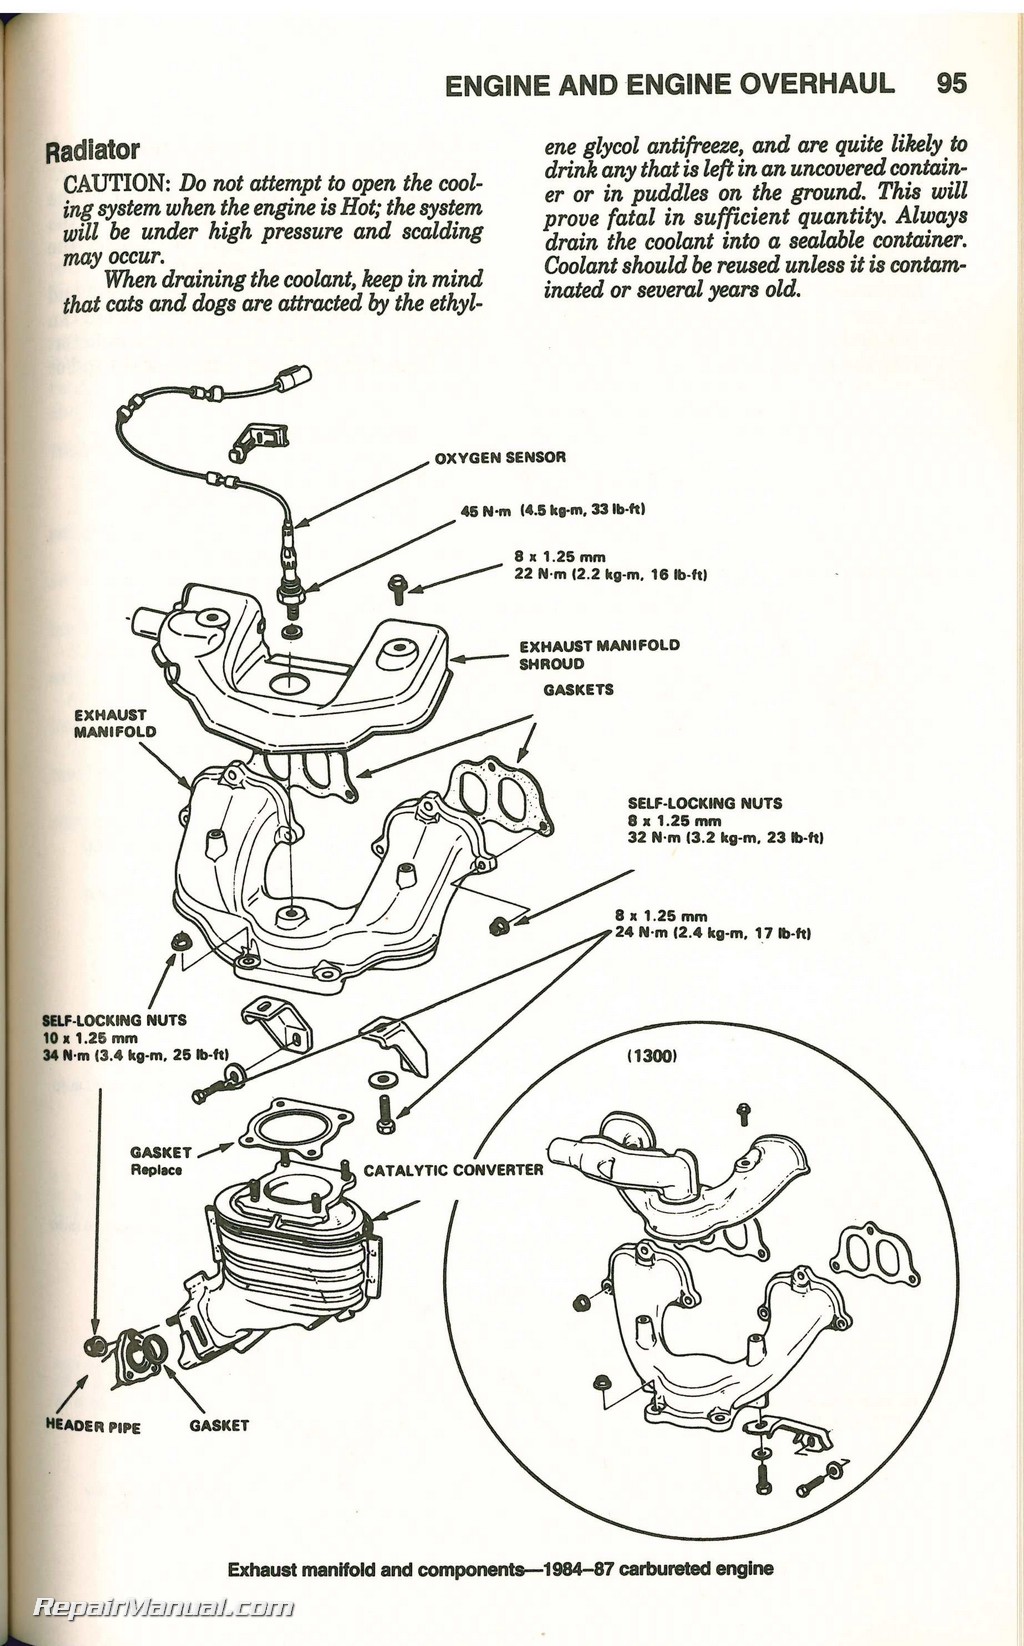 1990 Honda civic repair manual pdf